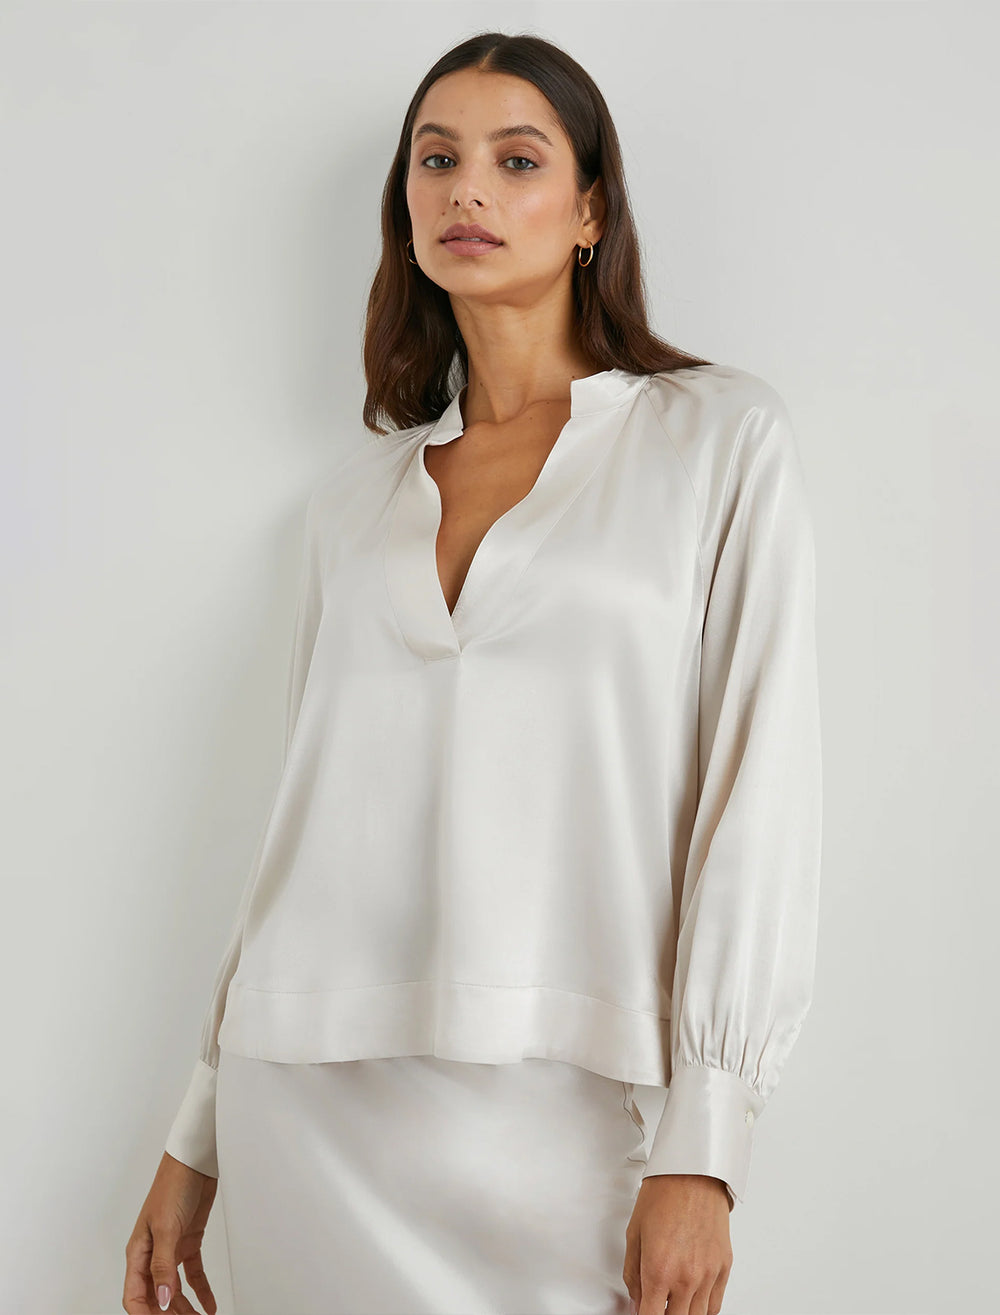 Model wearing Rails' wynna blouse in ivory.